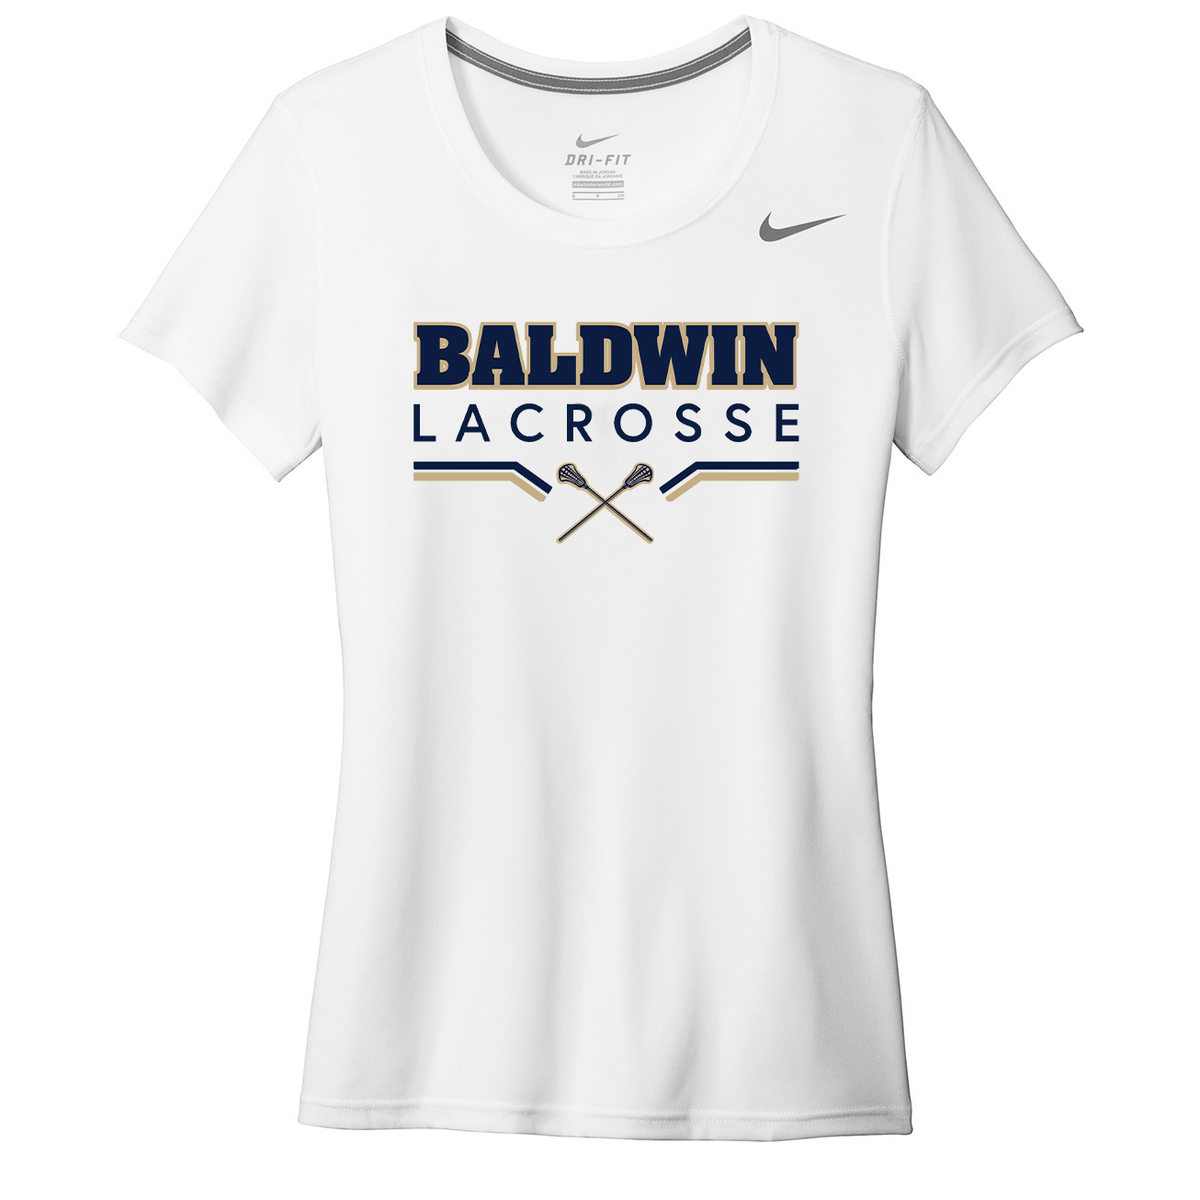 Baldwin HS Girls Lacrosse Nike Ladies Legend Tee